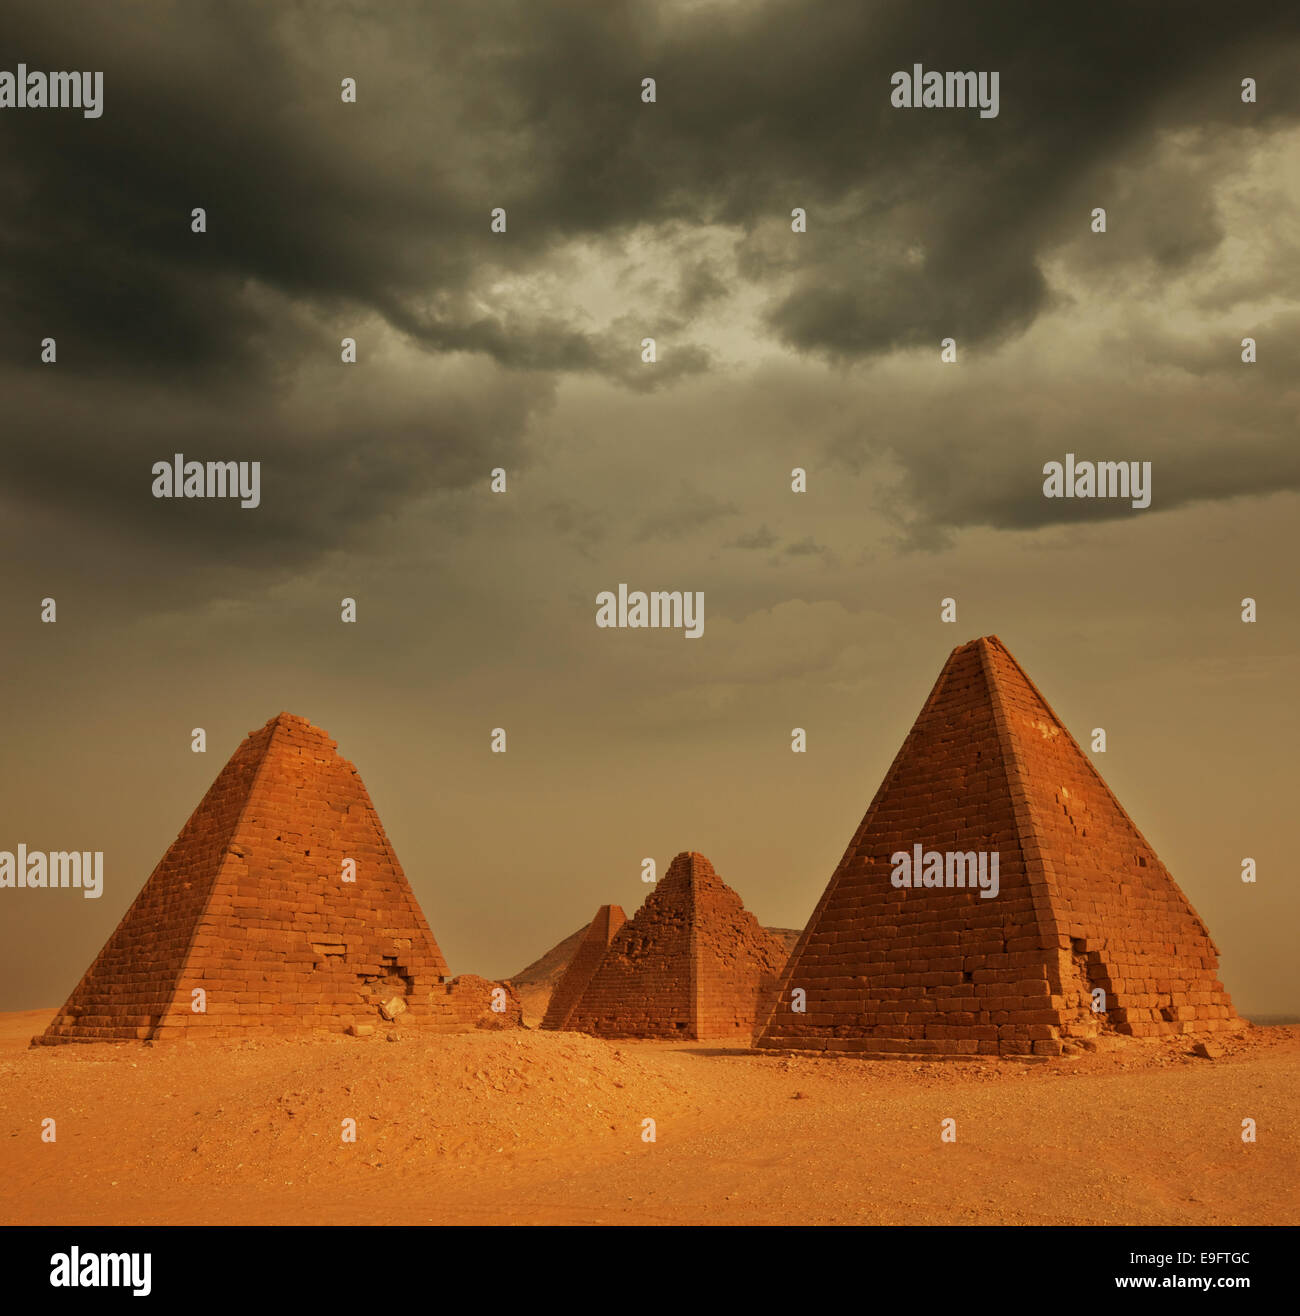 Pyramid in Sudan Stock Photo